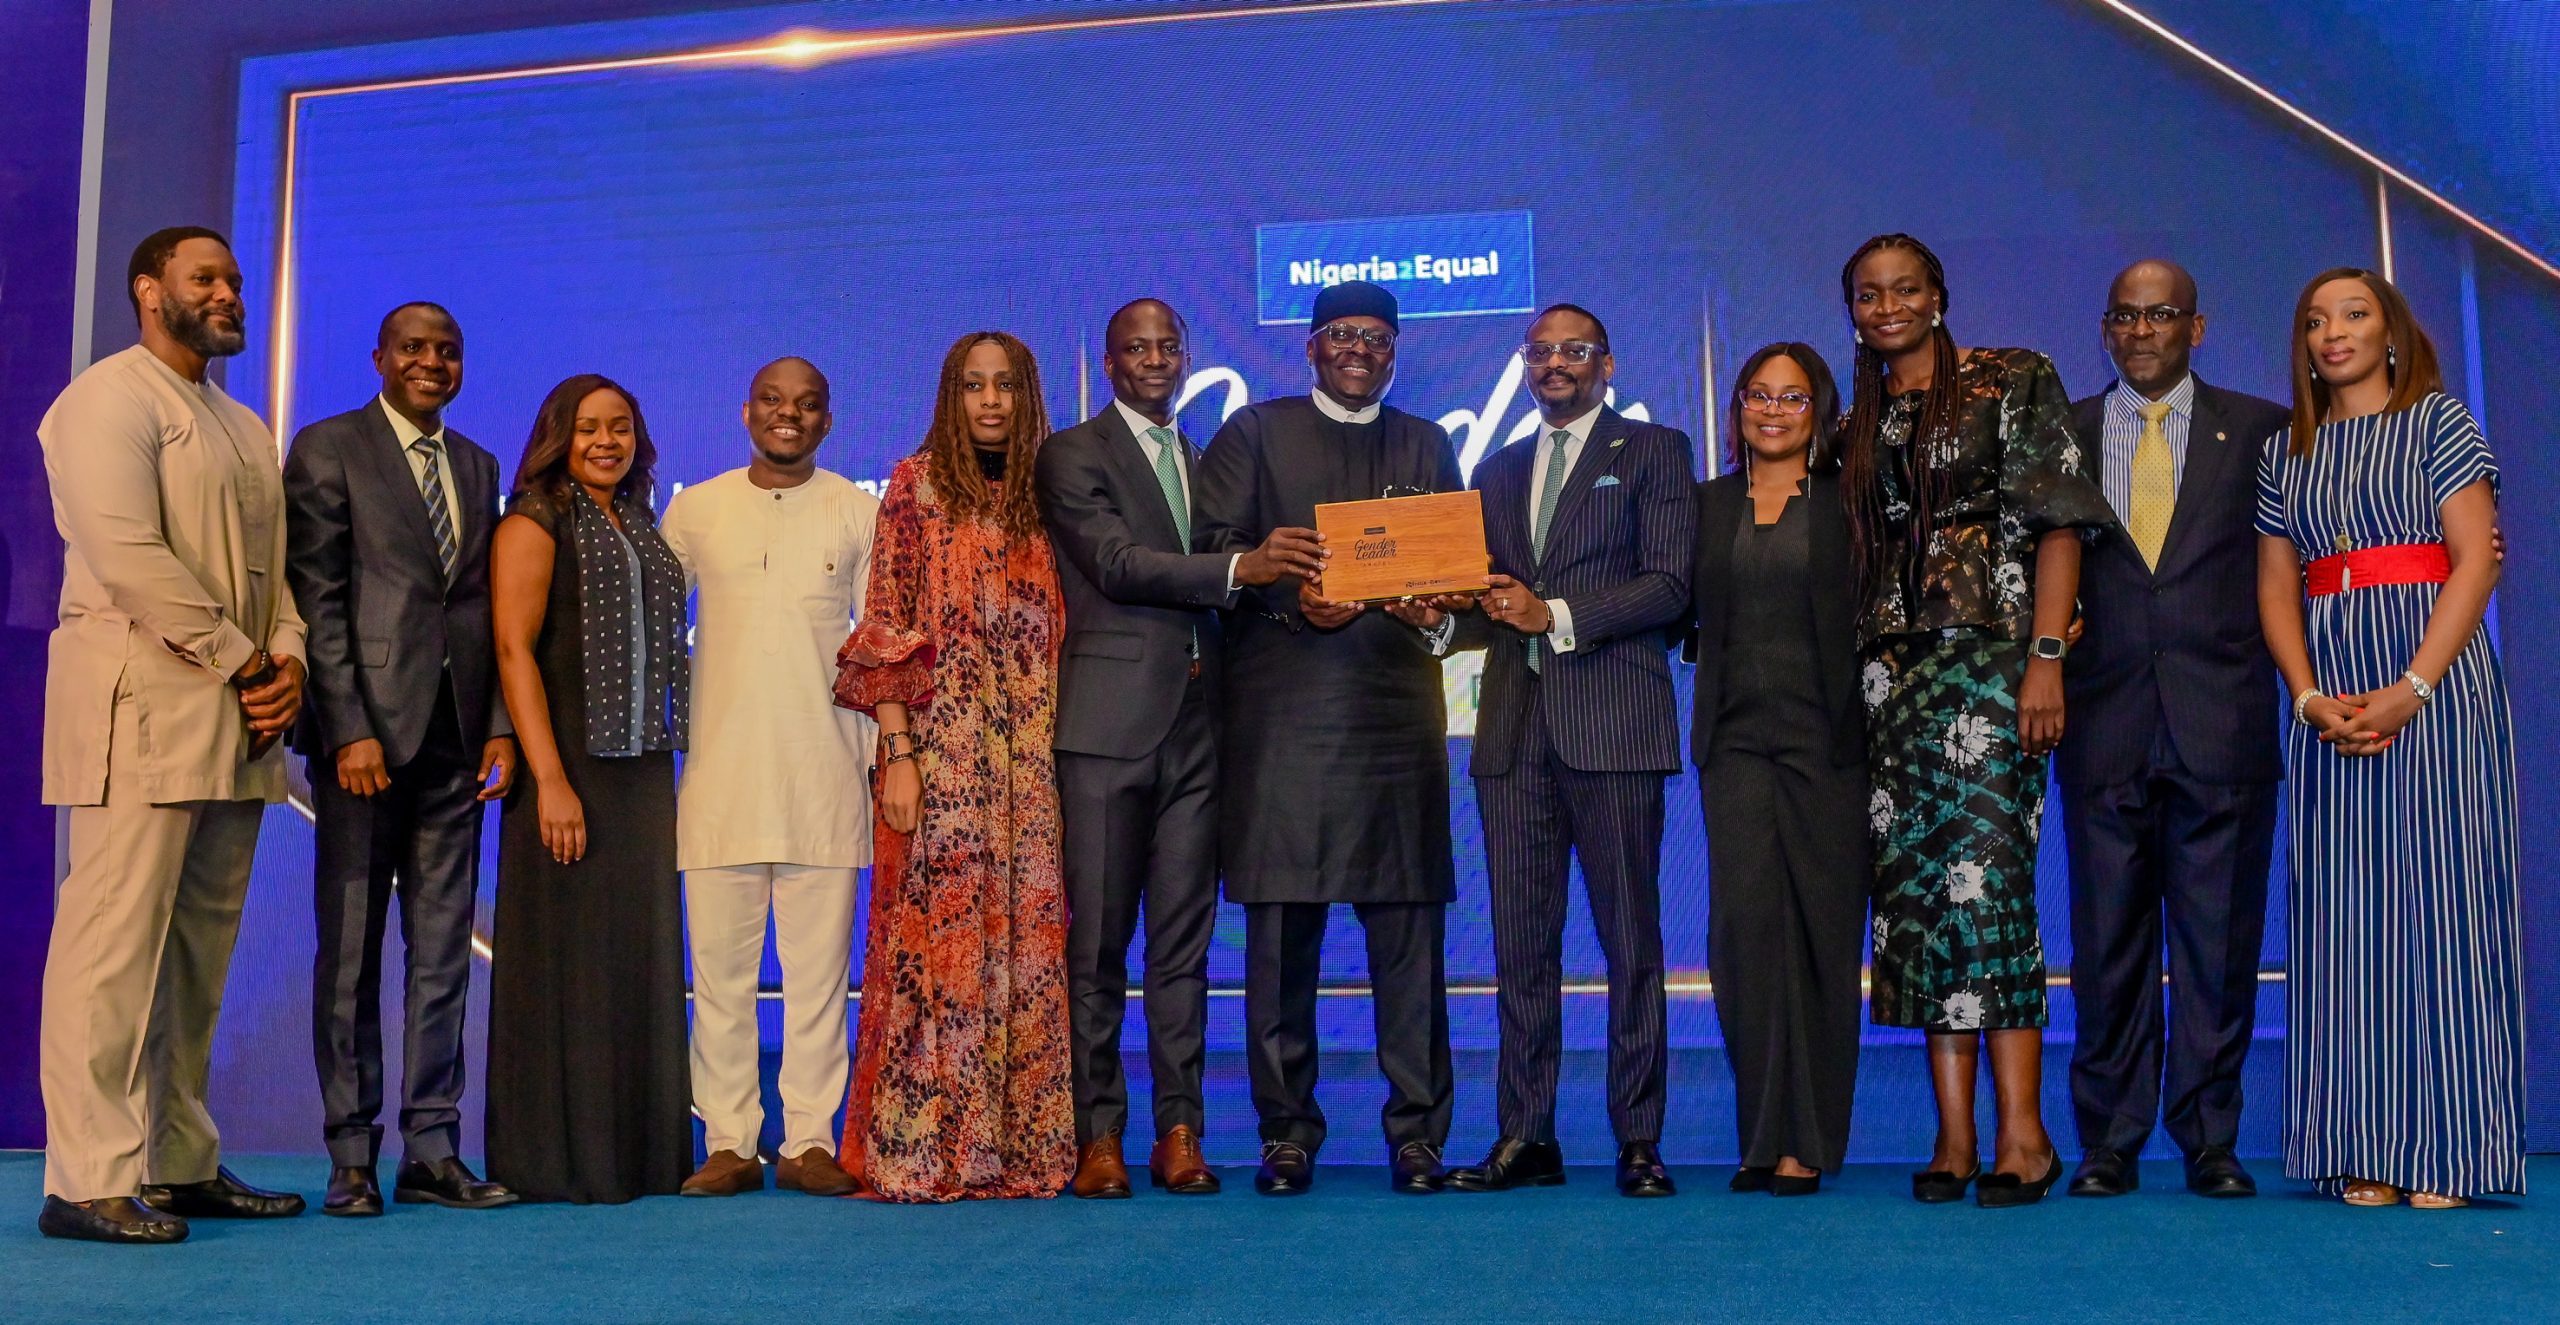 Nigeria2Equal Gender Leader Awards